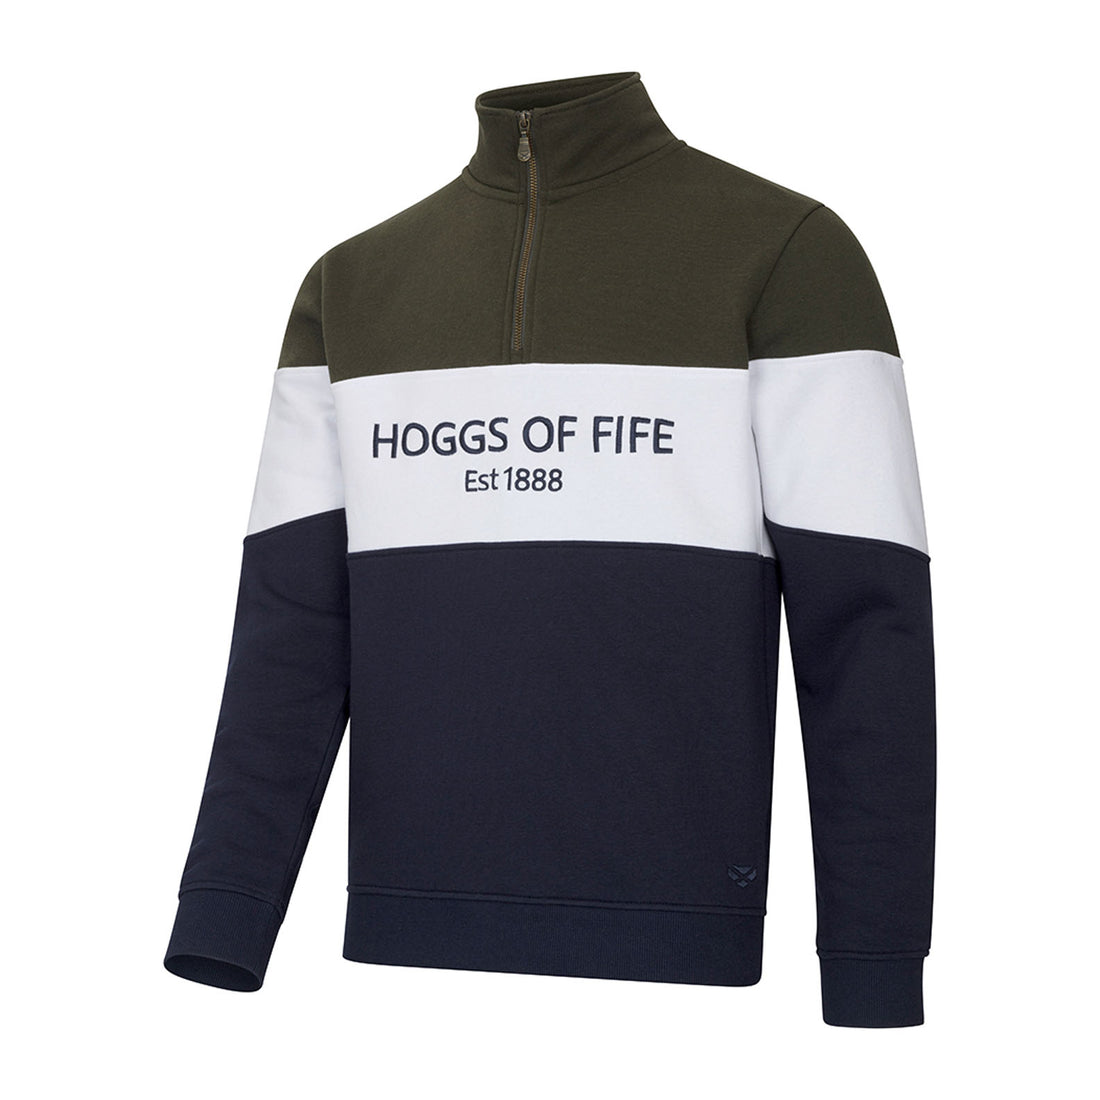 Hoggs Of Fife Dumfries 1888 Gents 1/4 Zip Sweatshirt